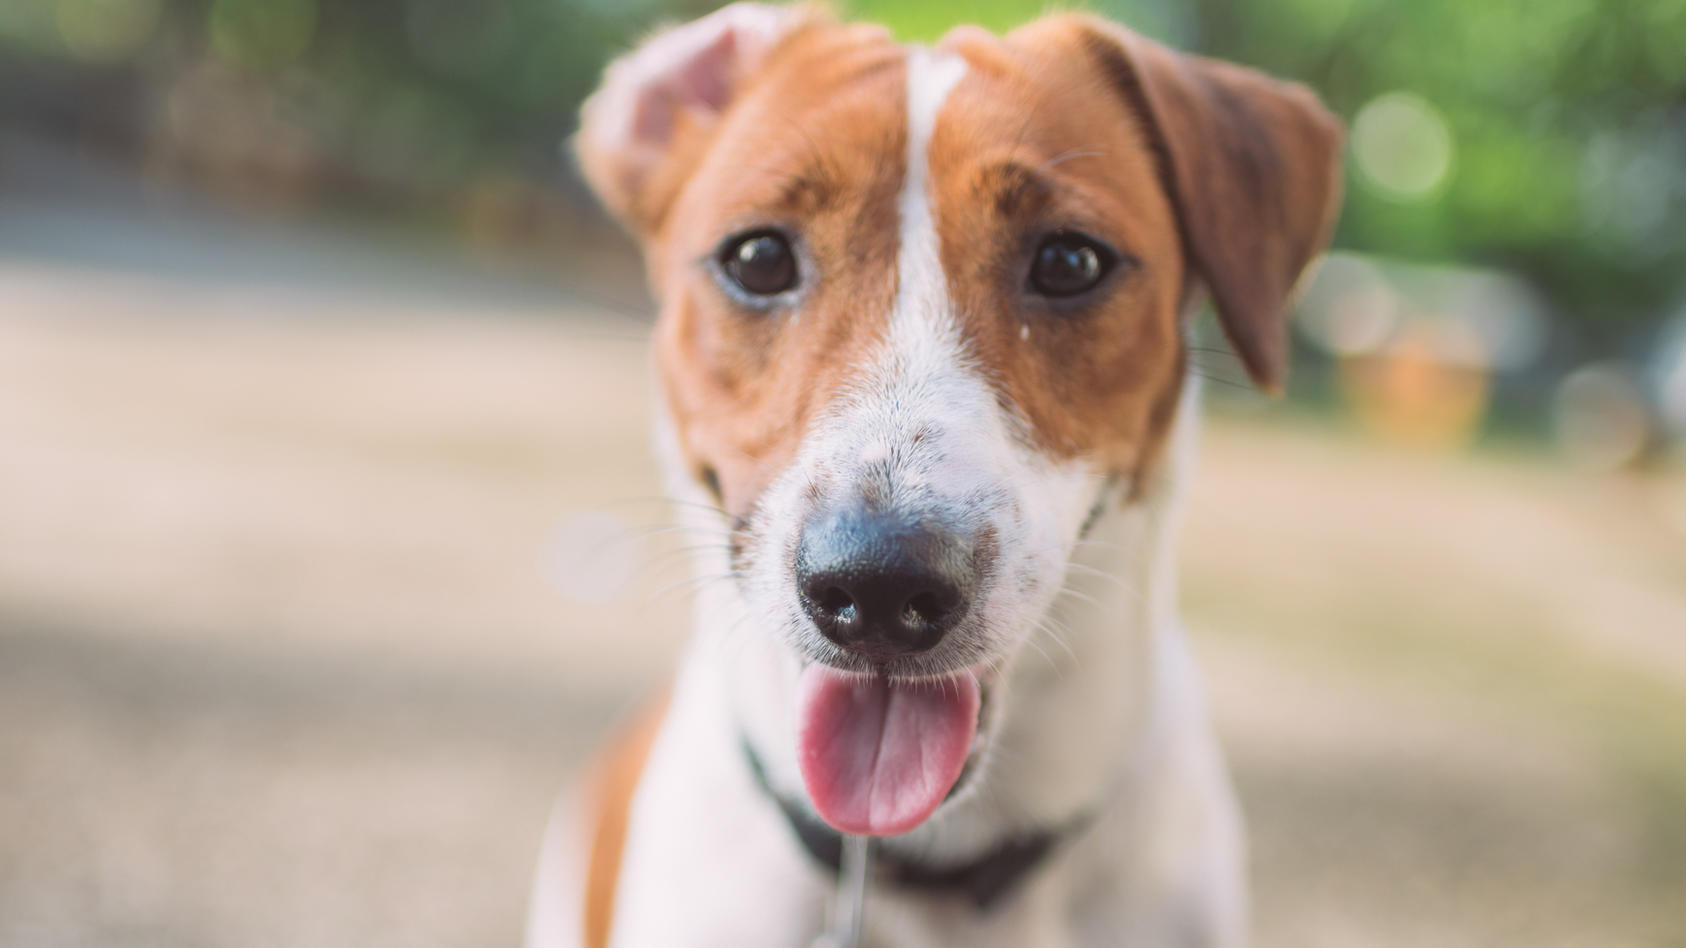 Glat Uredelighed nylon Ihr Hund atmet ständig schnell? Martin Rütter erklärt, wann Sie zum  Tierarzt sollten